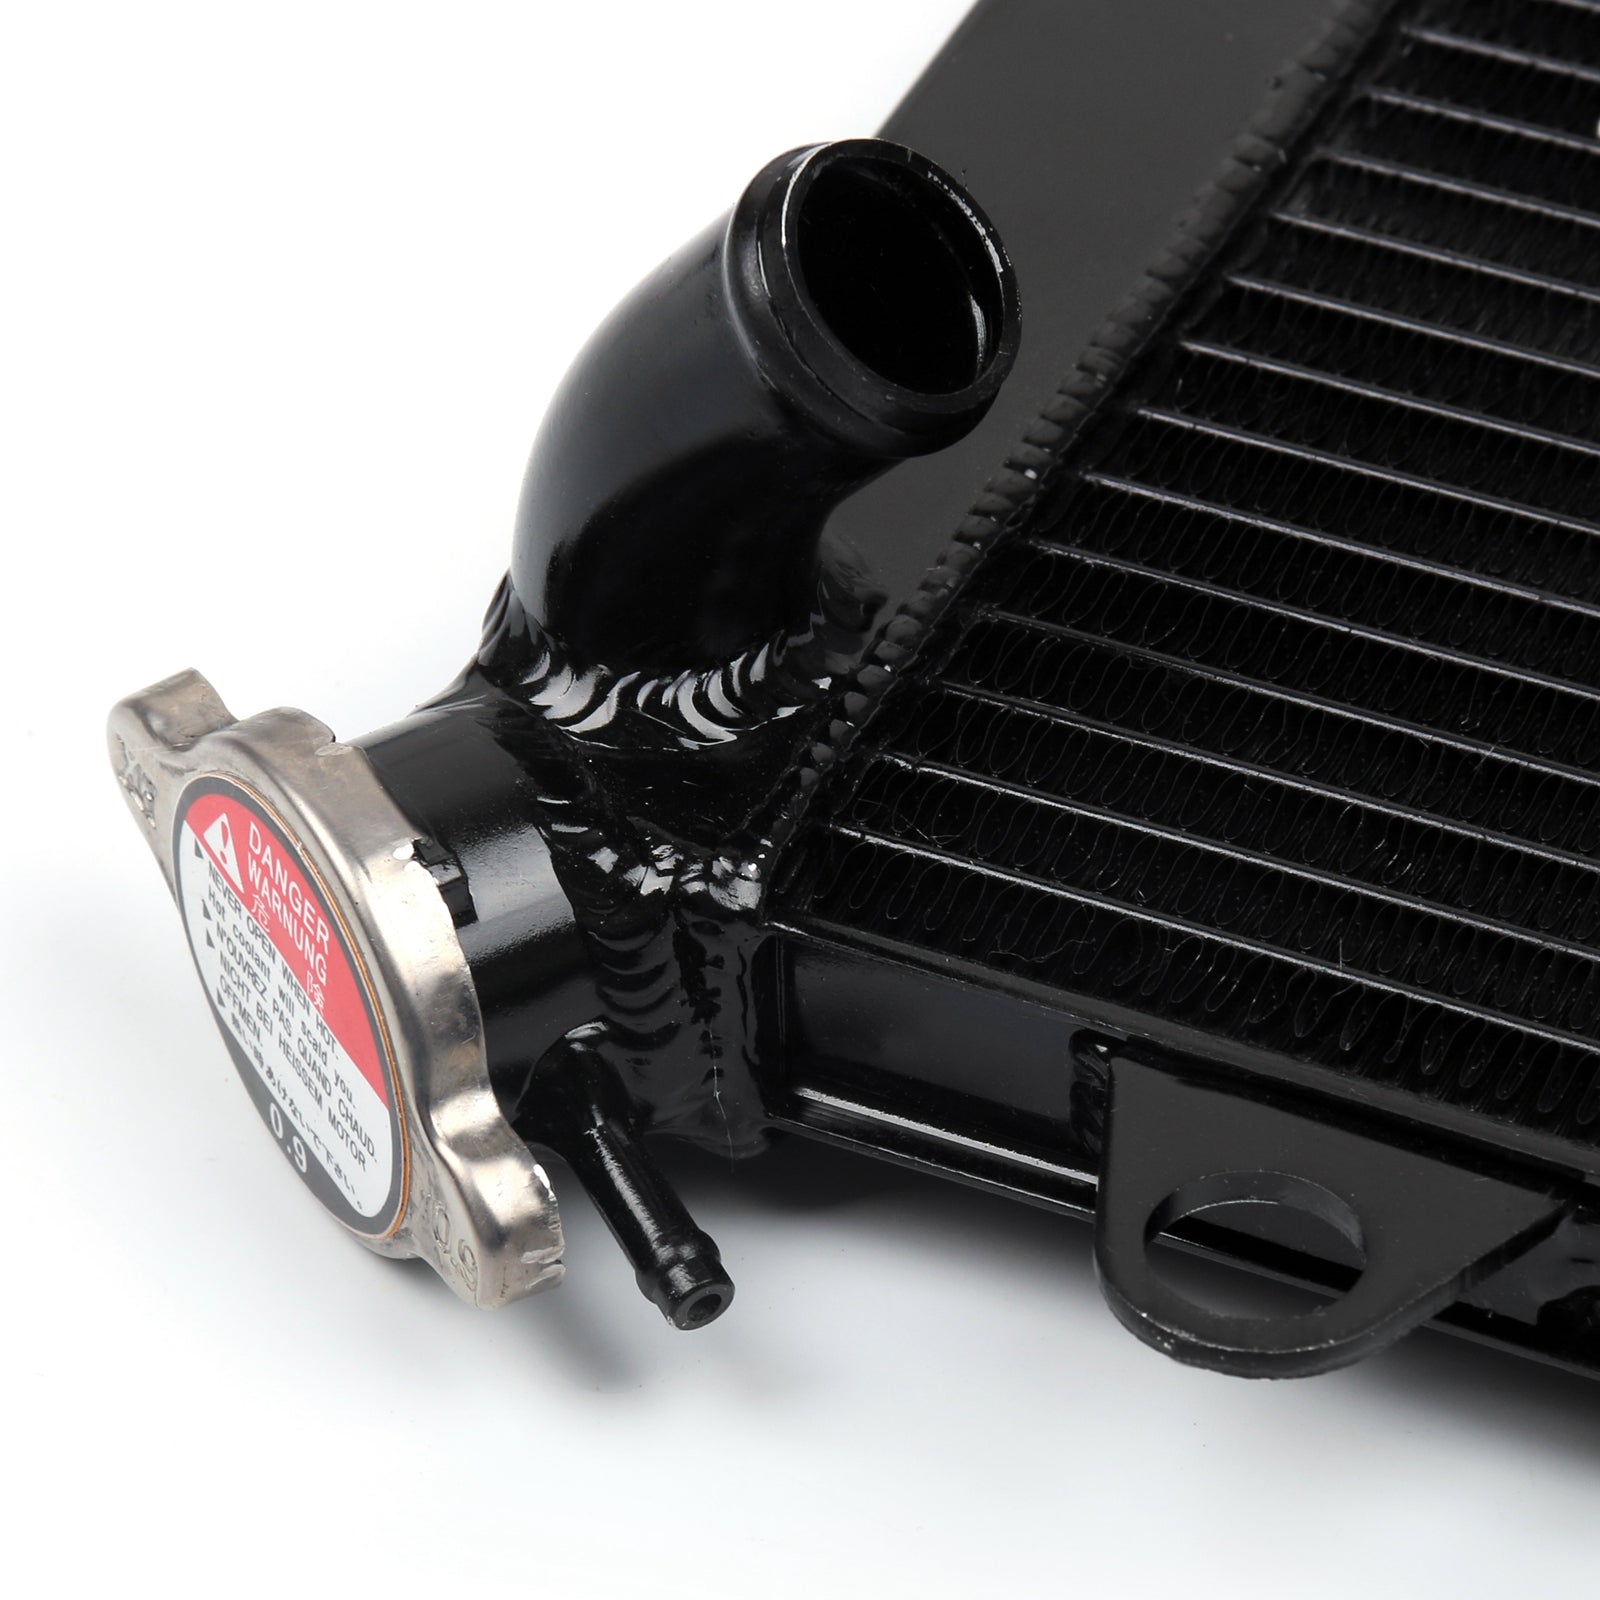 Enfriador de cubierta protectora de rejilla para Yamaha XTZ1200 Super Tenere 2010-2015 genérico